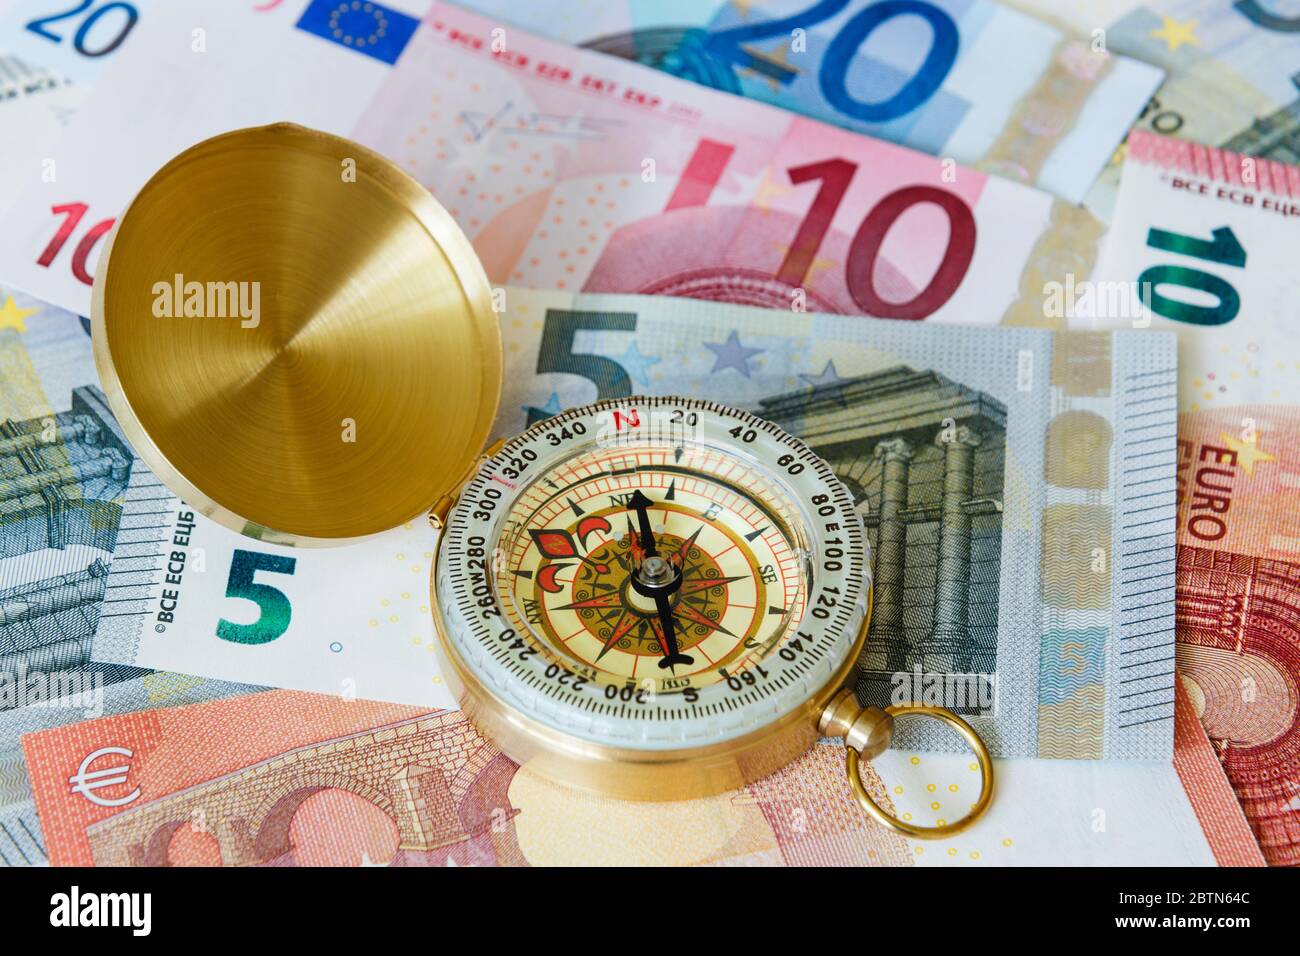 Une boussole en laiton sur la monnaie de l'UE l'euro note les billets en euros pour illustrer l'orientation de l'économie de la zone euro. Europe Banque D'Images